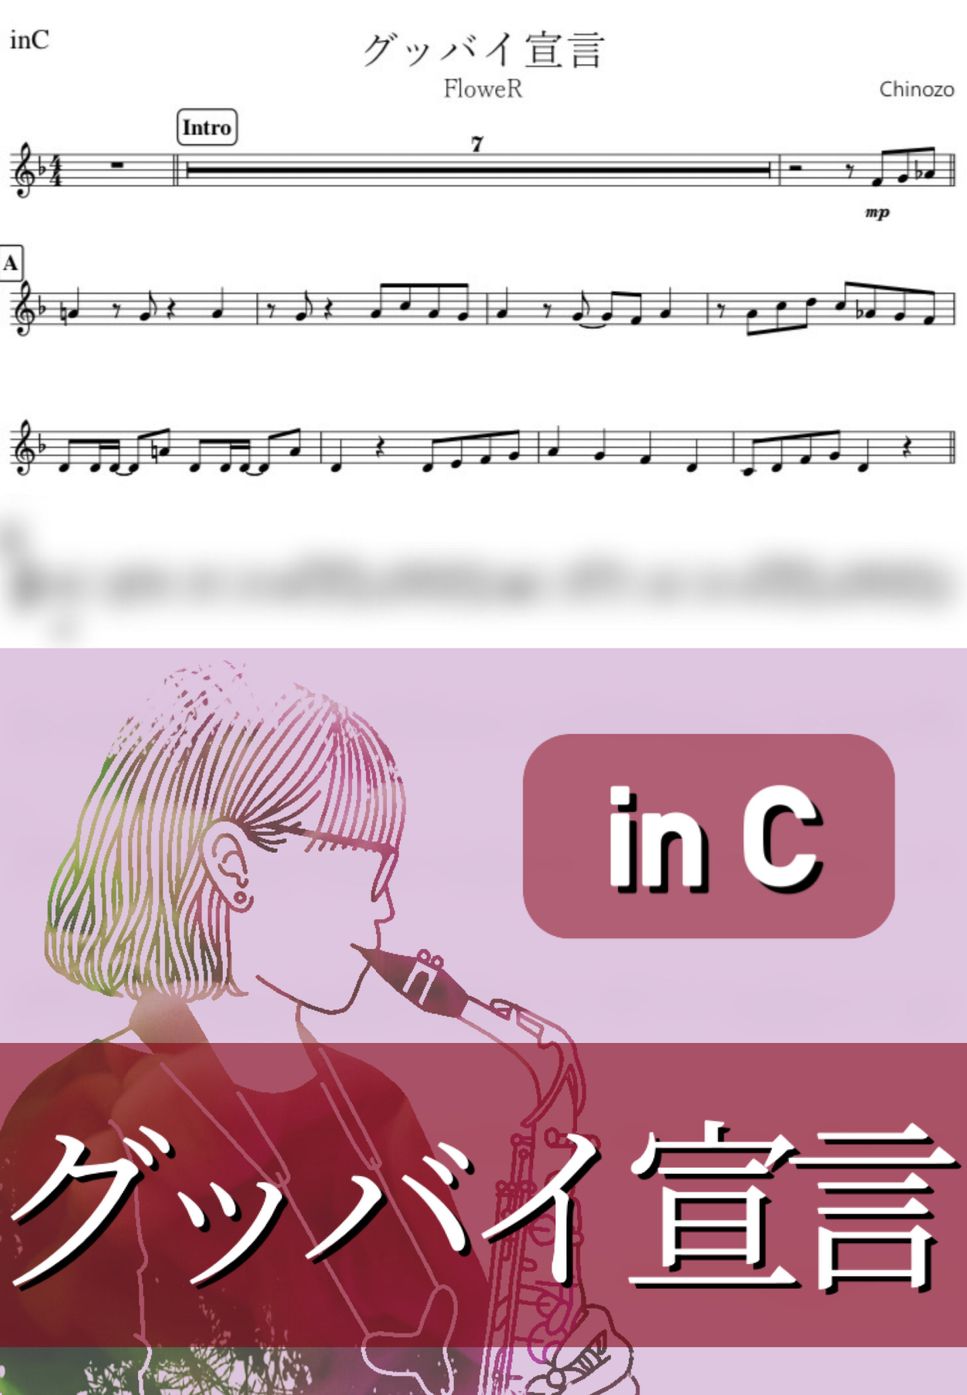 Chinozo - グッバイ宣言 (C) by kanamusic